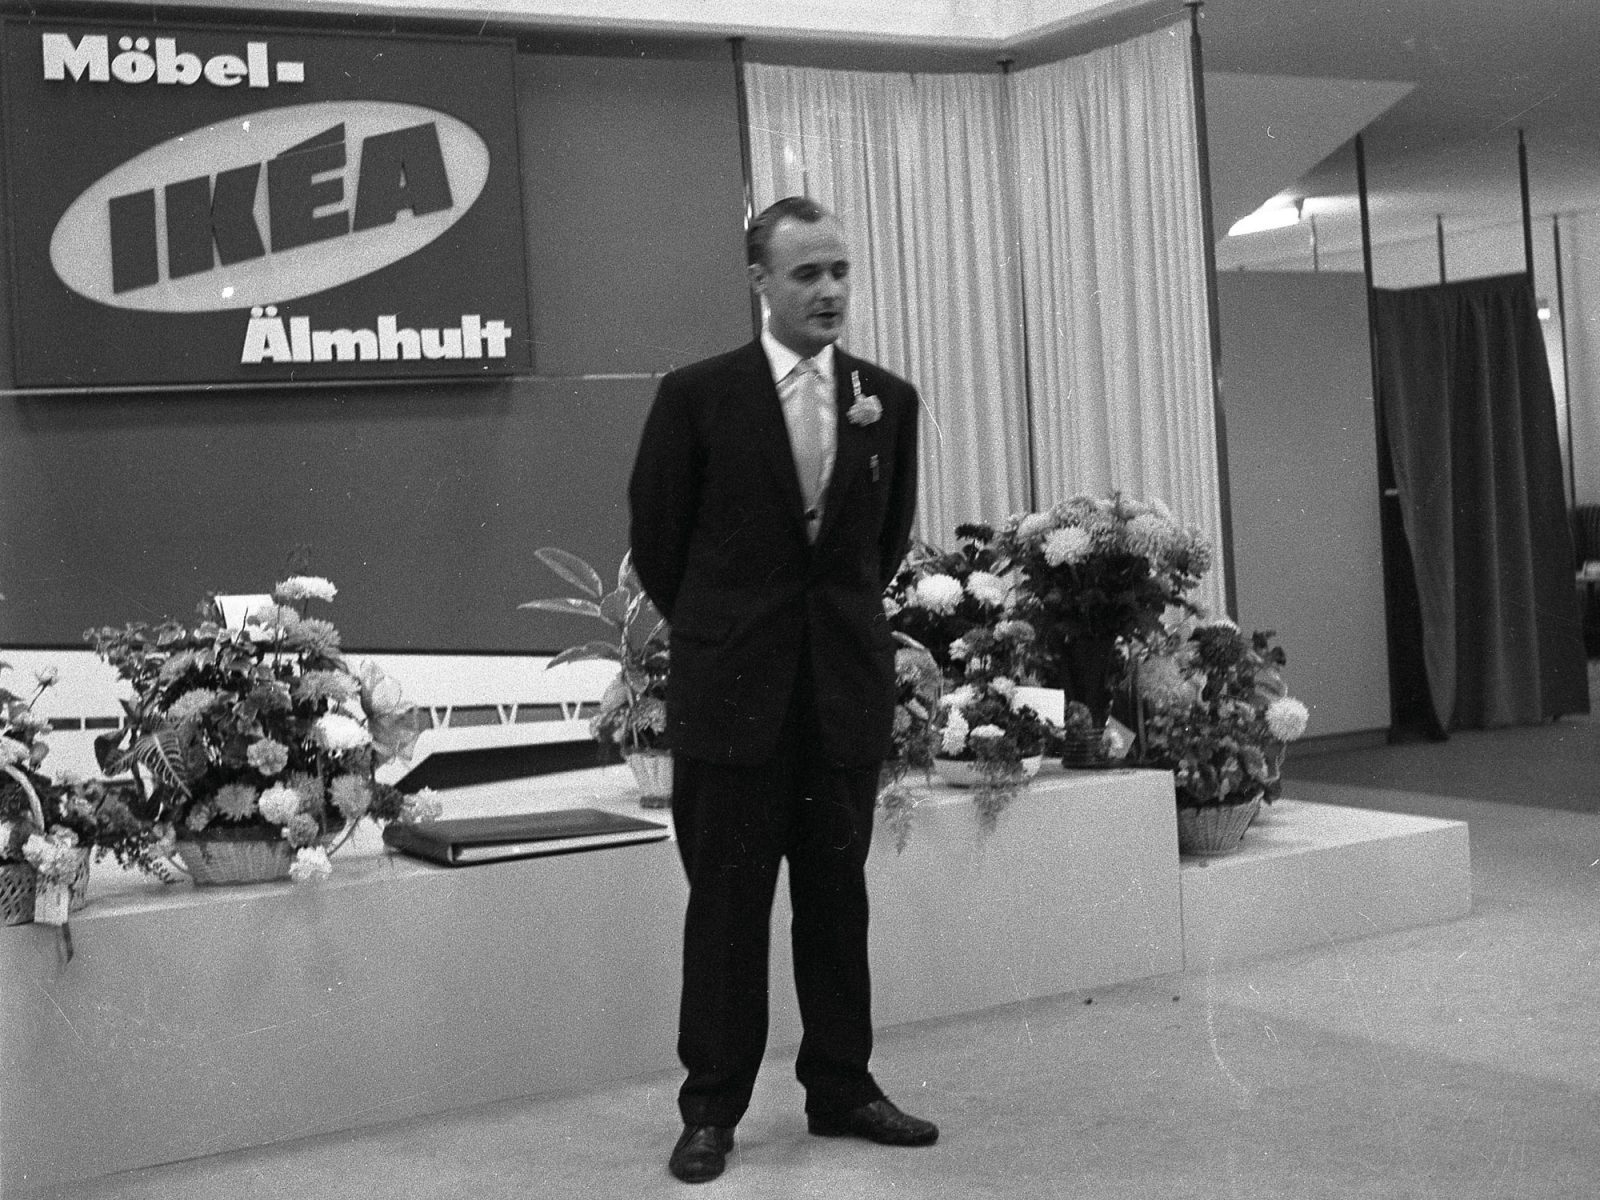 Un jeune Ingvar Kamprad dans un costume sombre prononce un discours devant un grand panneau IKEA et de nombreuses fleurs.